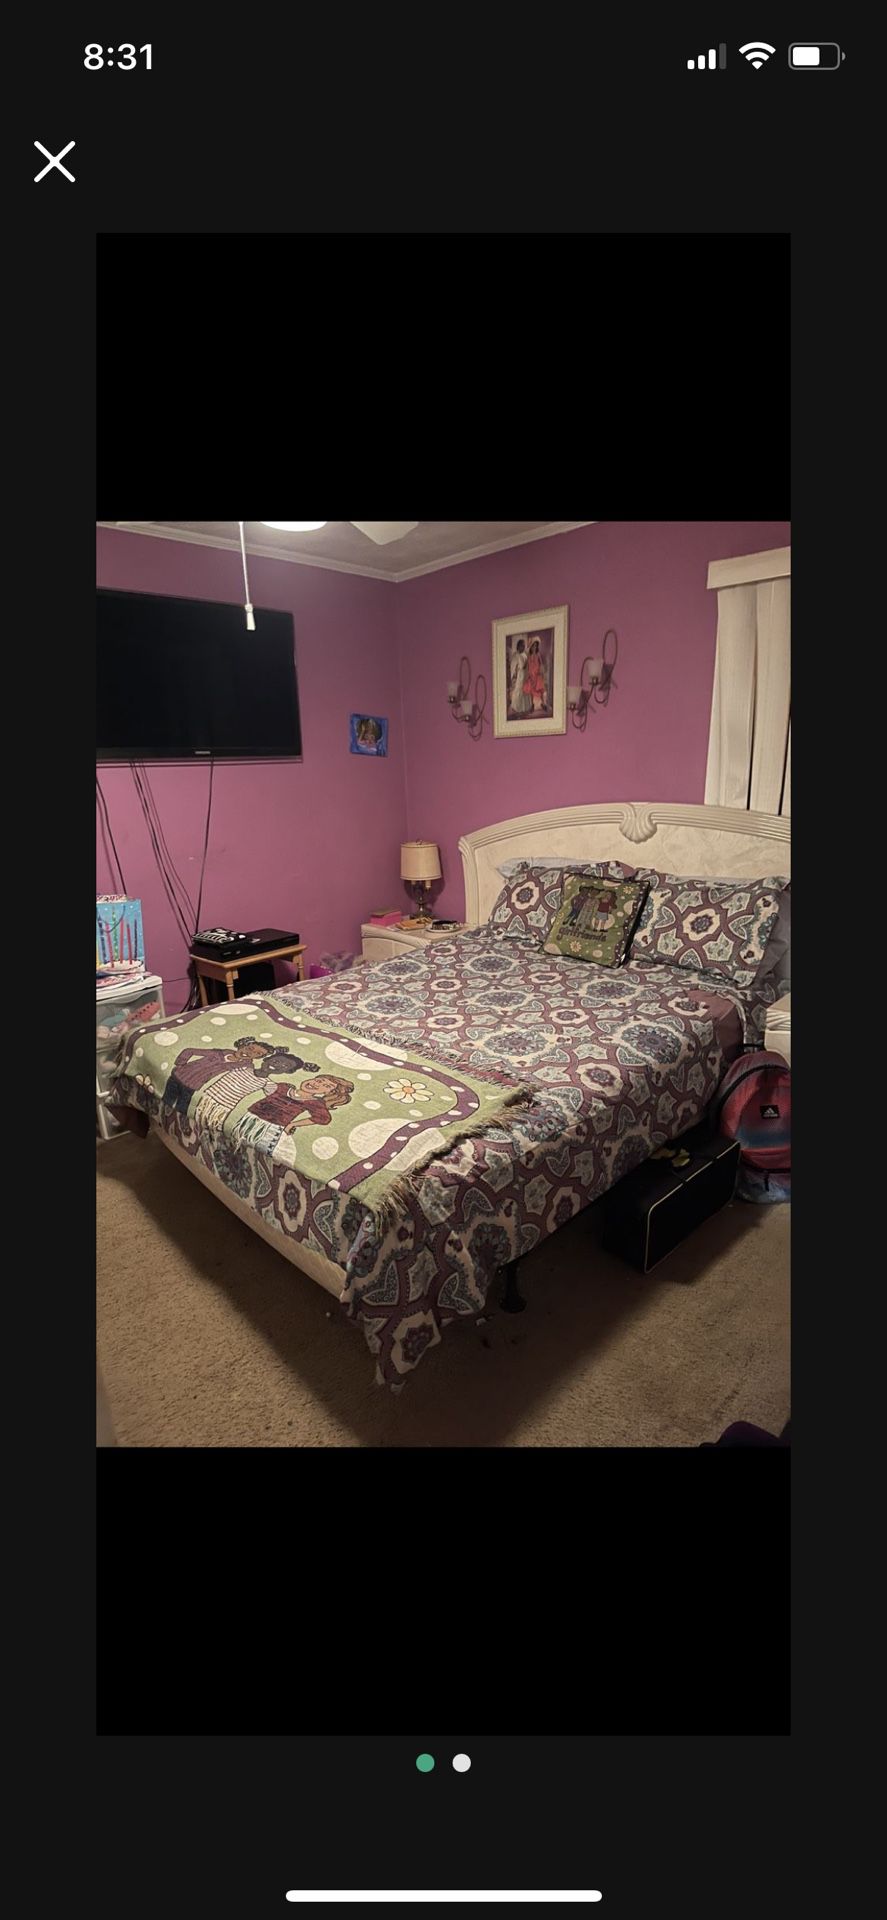 Sale! Beautiful Queen/King Bedroom Set